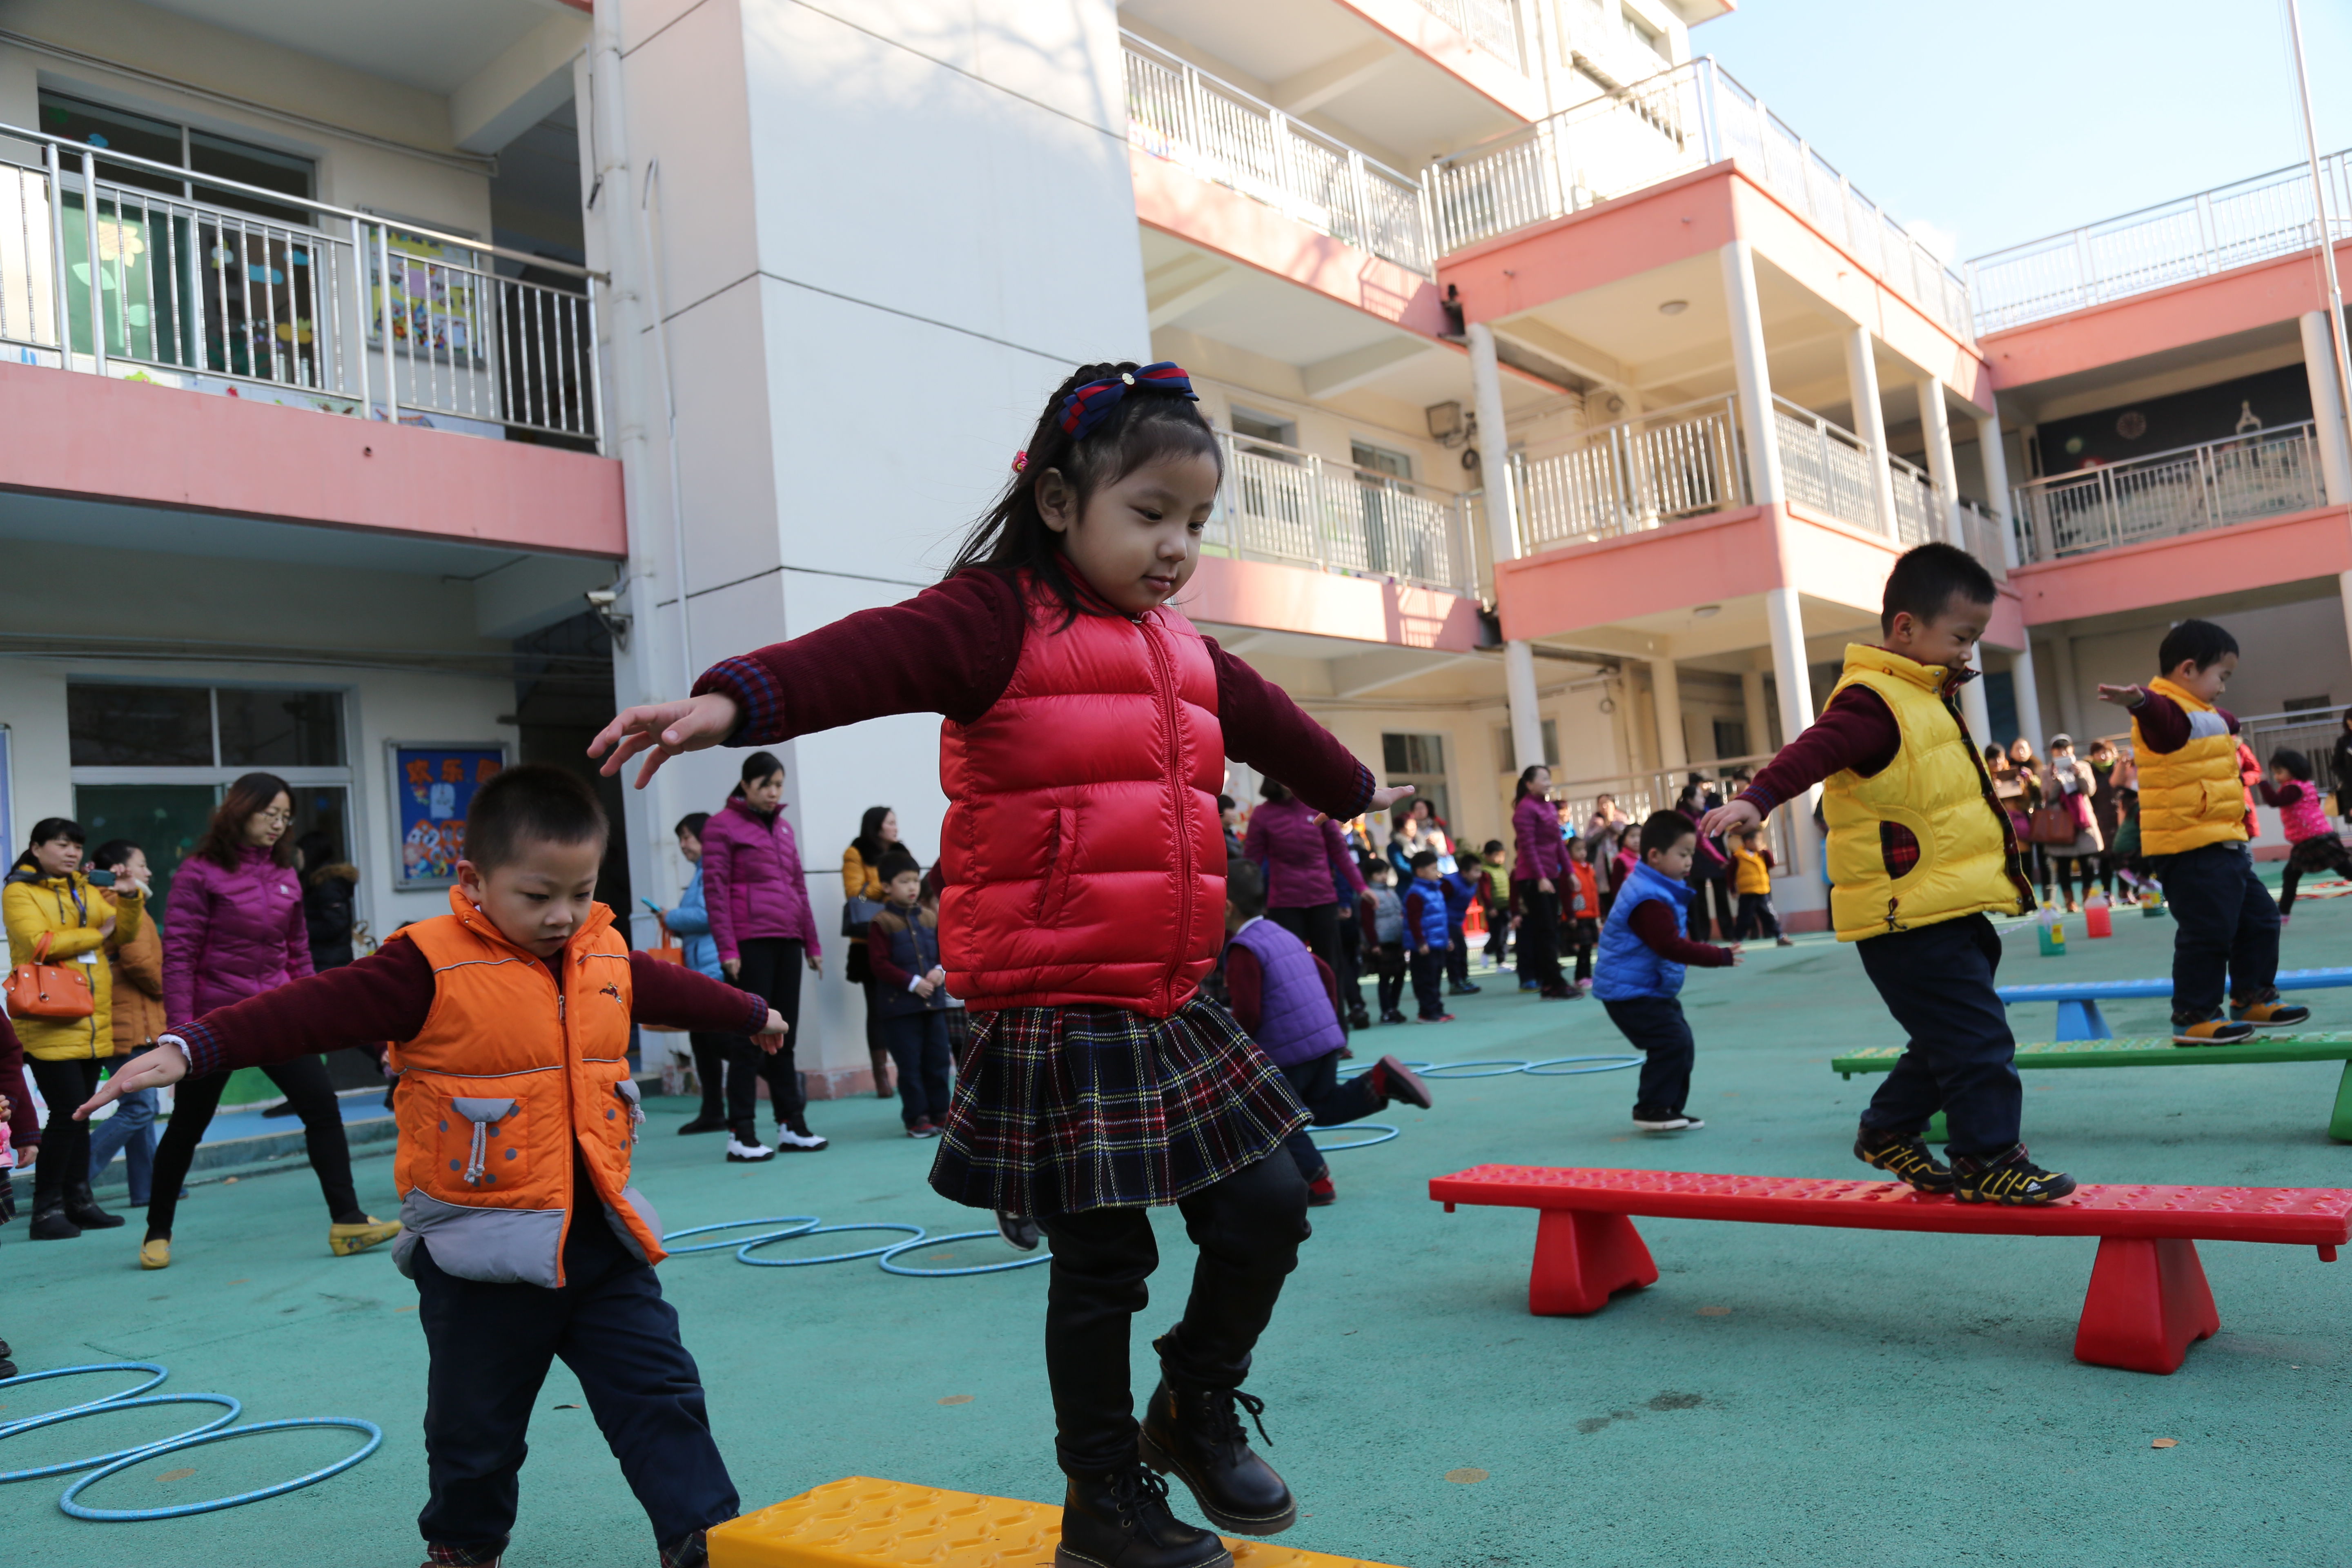 践行爱的教育!济南市市中区百所幼儿园在行动